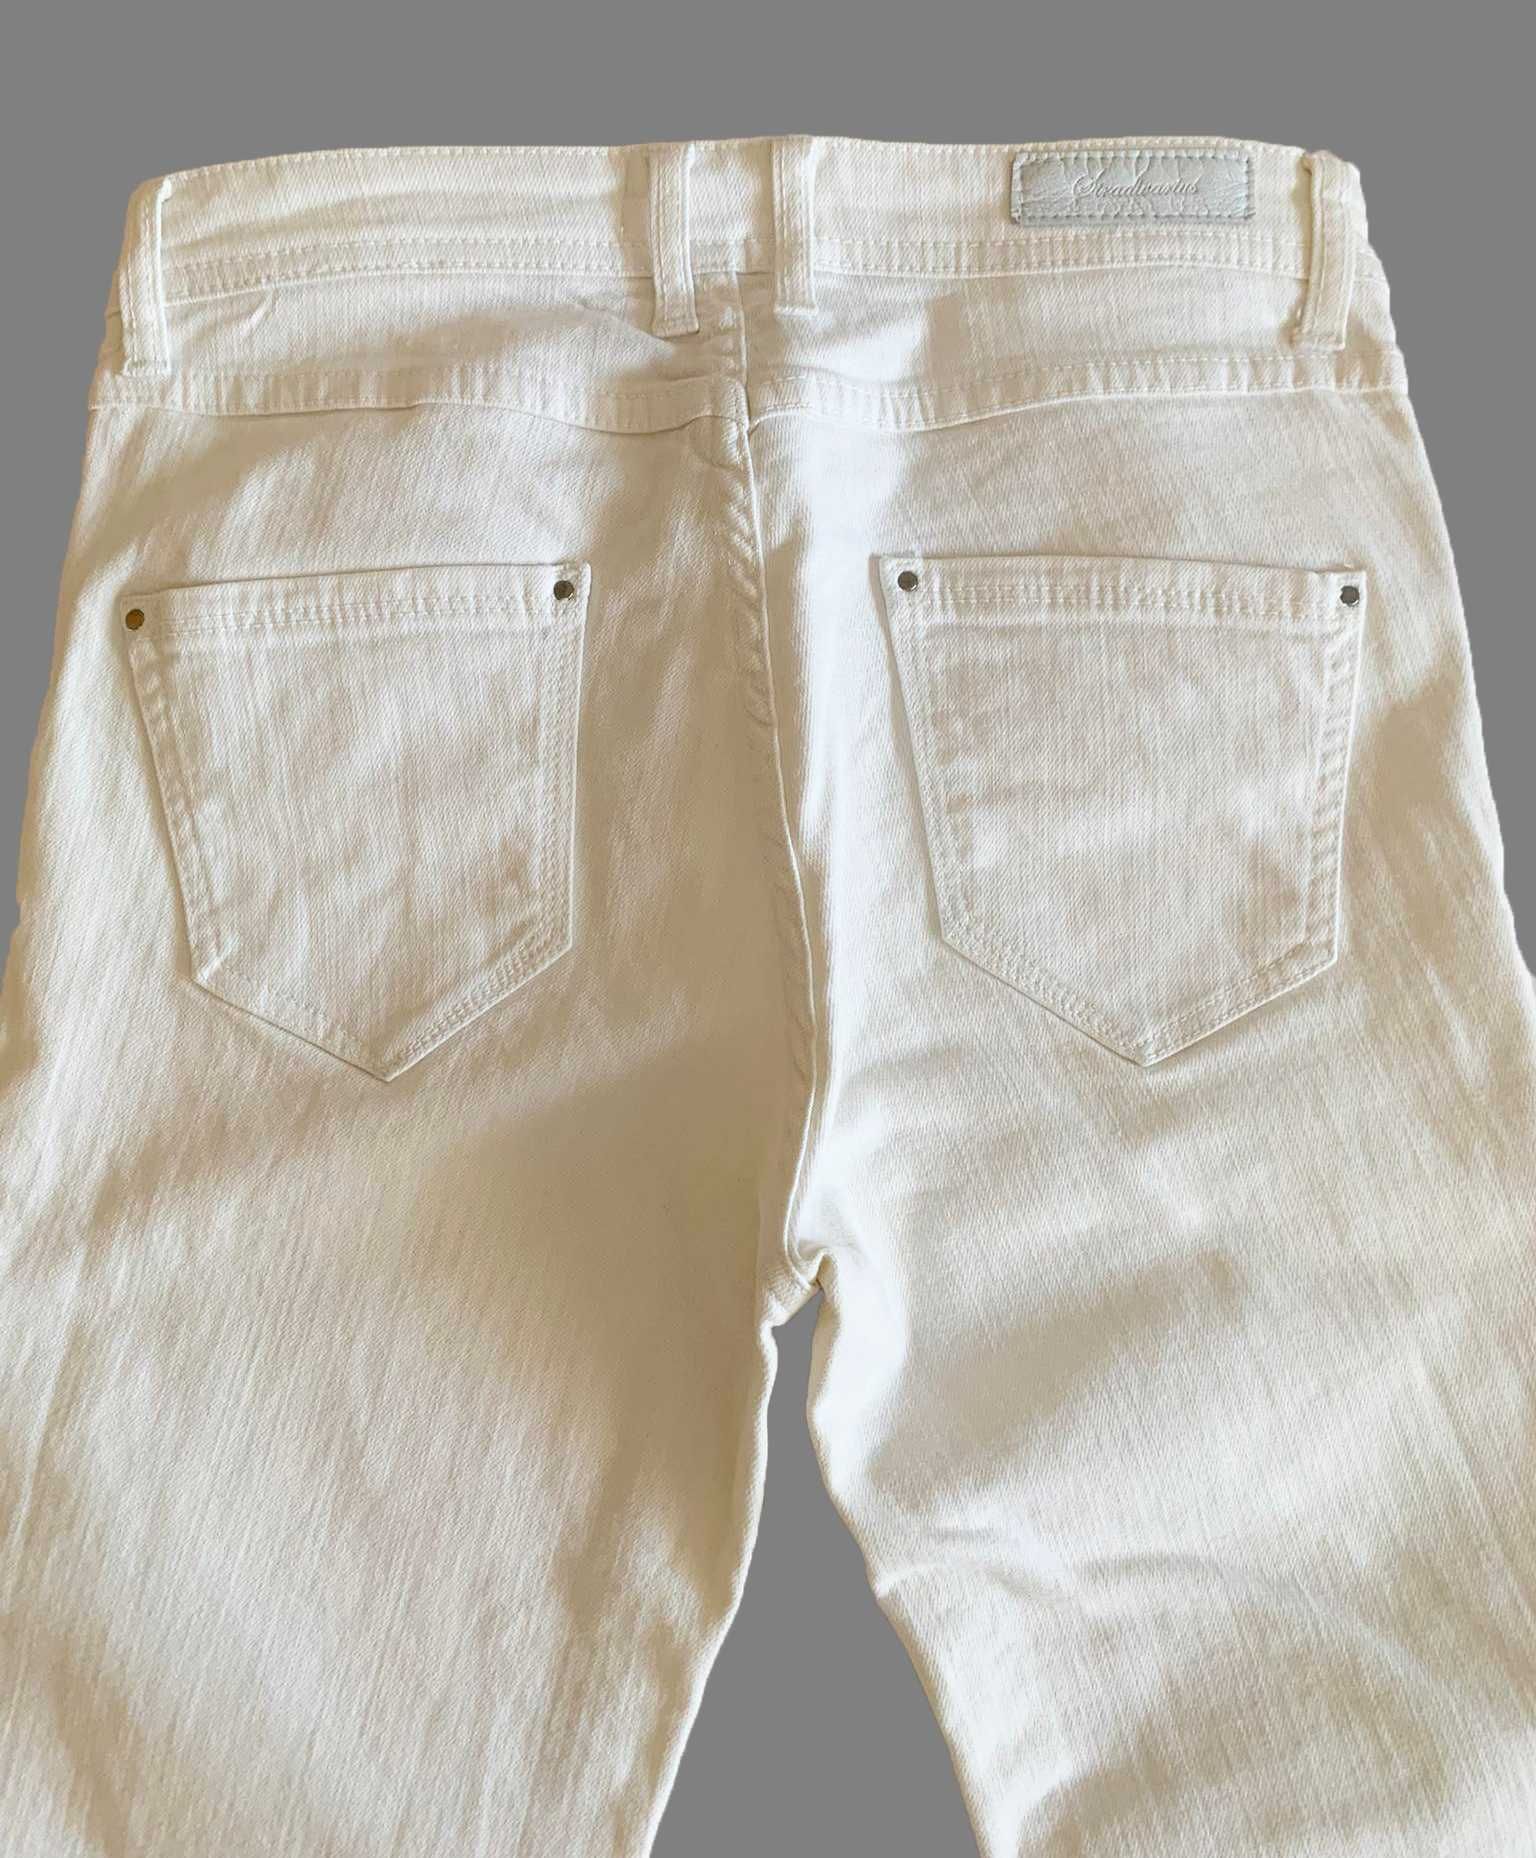 Jeans brancos, Slim, como novos